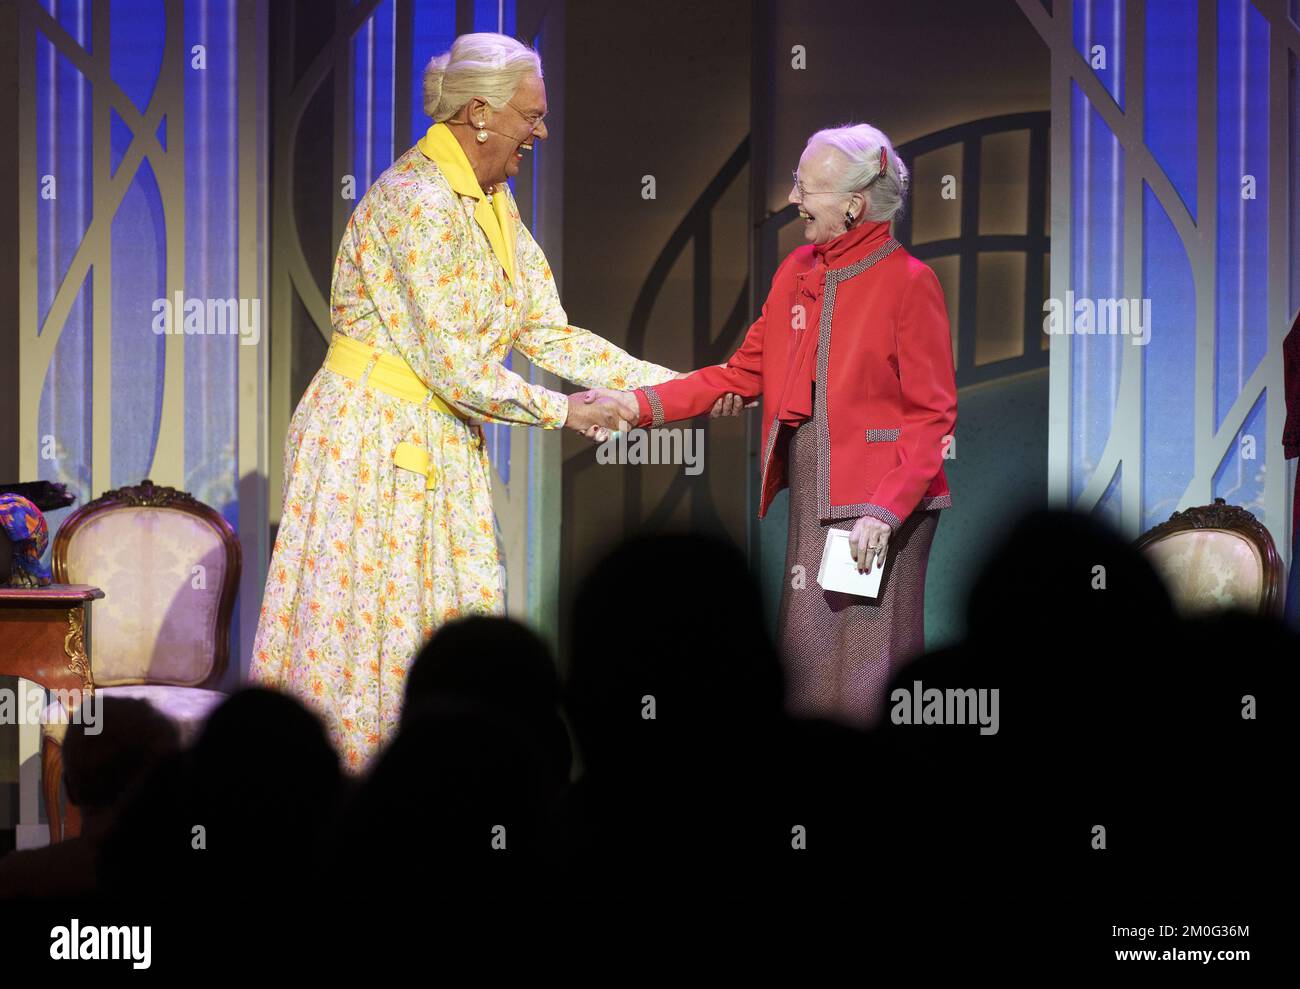 Königin Margrethe überraschende dänische Revue-Ikone Ulf Pilgaard auf der Bühne, als er sich nach 40 Saisons von der Revue-Szene zurückzieht. Sonntag, 3. Oktober 2021. Der 80-jährige Schauspieler erschien auf der Bühne, trug ein gelbes Kleid, das die Königin Margrethe darstellte, als die echte Königin auf der Bühne auftauchte und ihm für seine vielen Parodien von ihr dankte. (Foto: Keld Navntoft/Ritzau Scanpix) Stockfoto